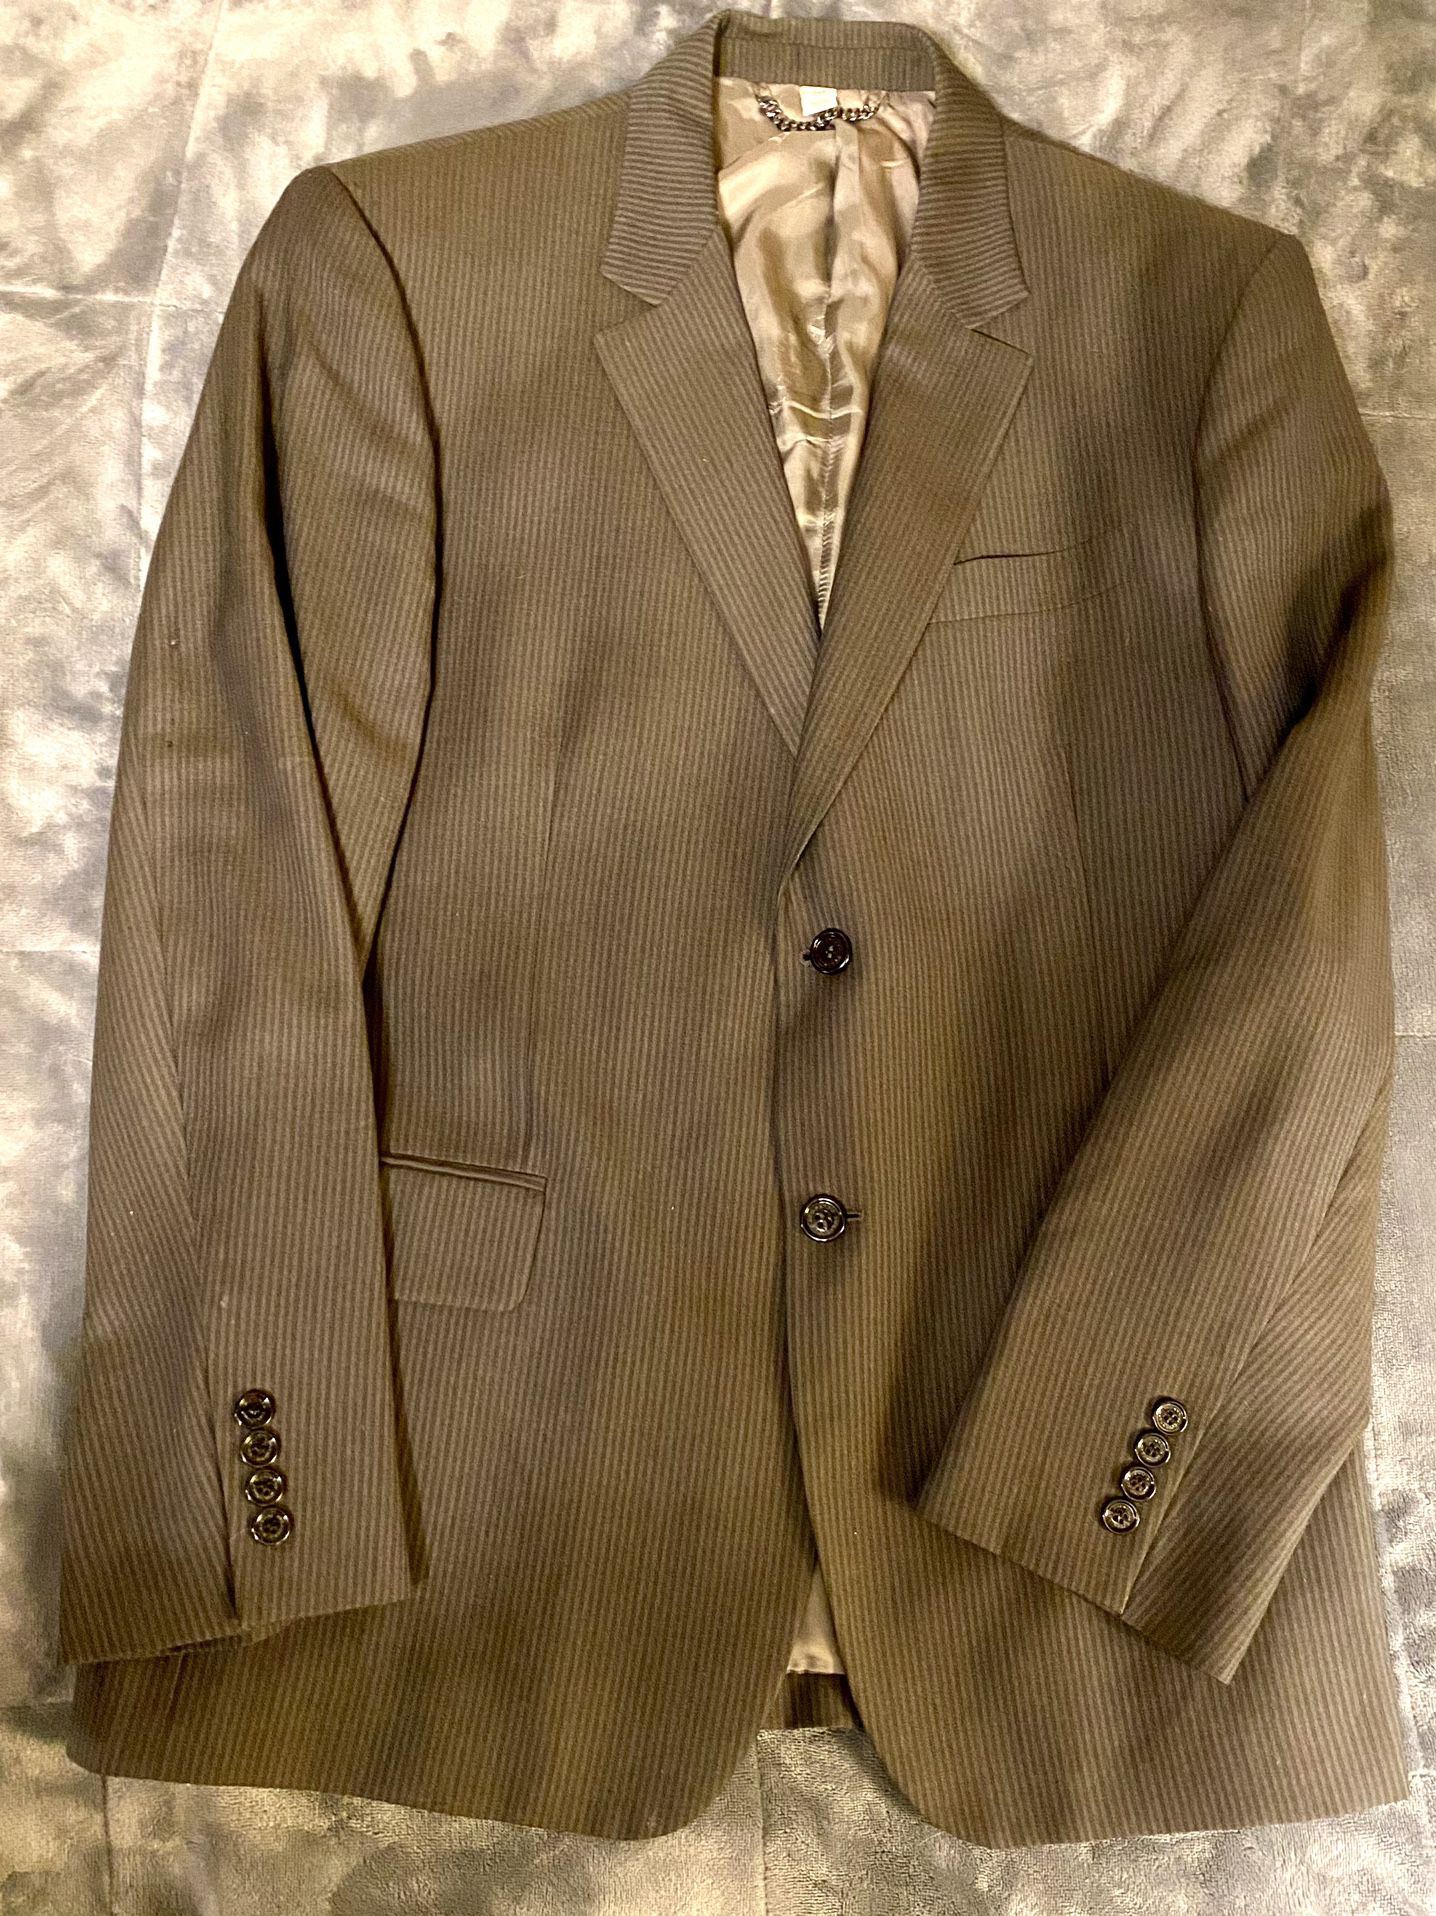 Burberry London Collins 2- Button Dual Vented Gray Blazer - Size 54 - Suit Coat